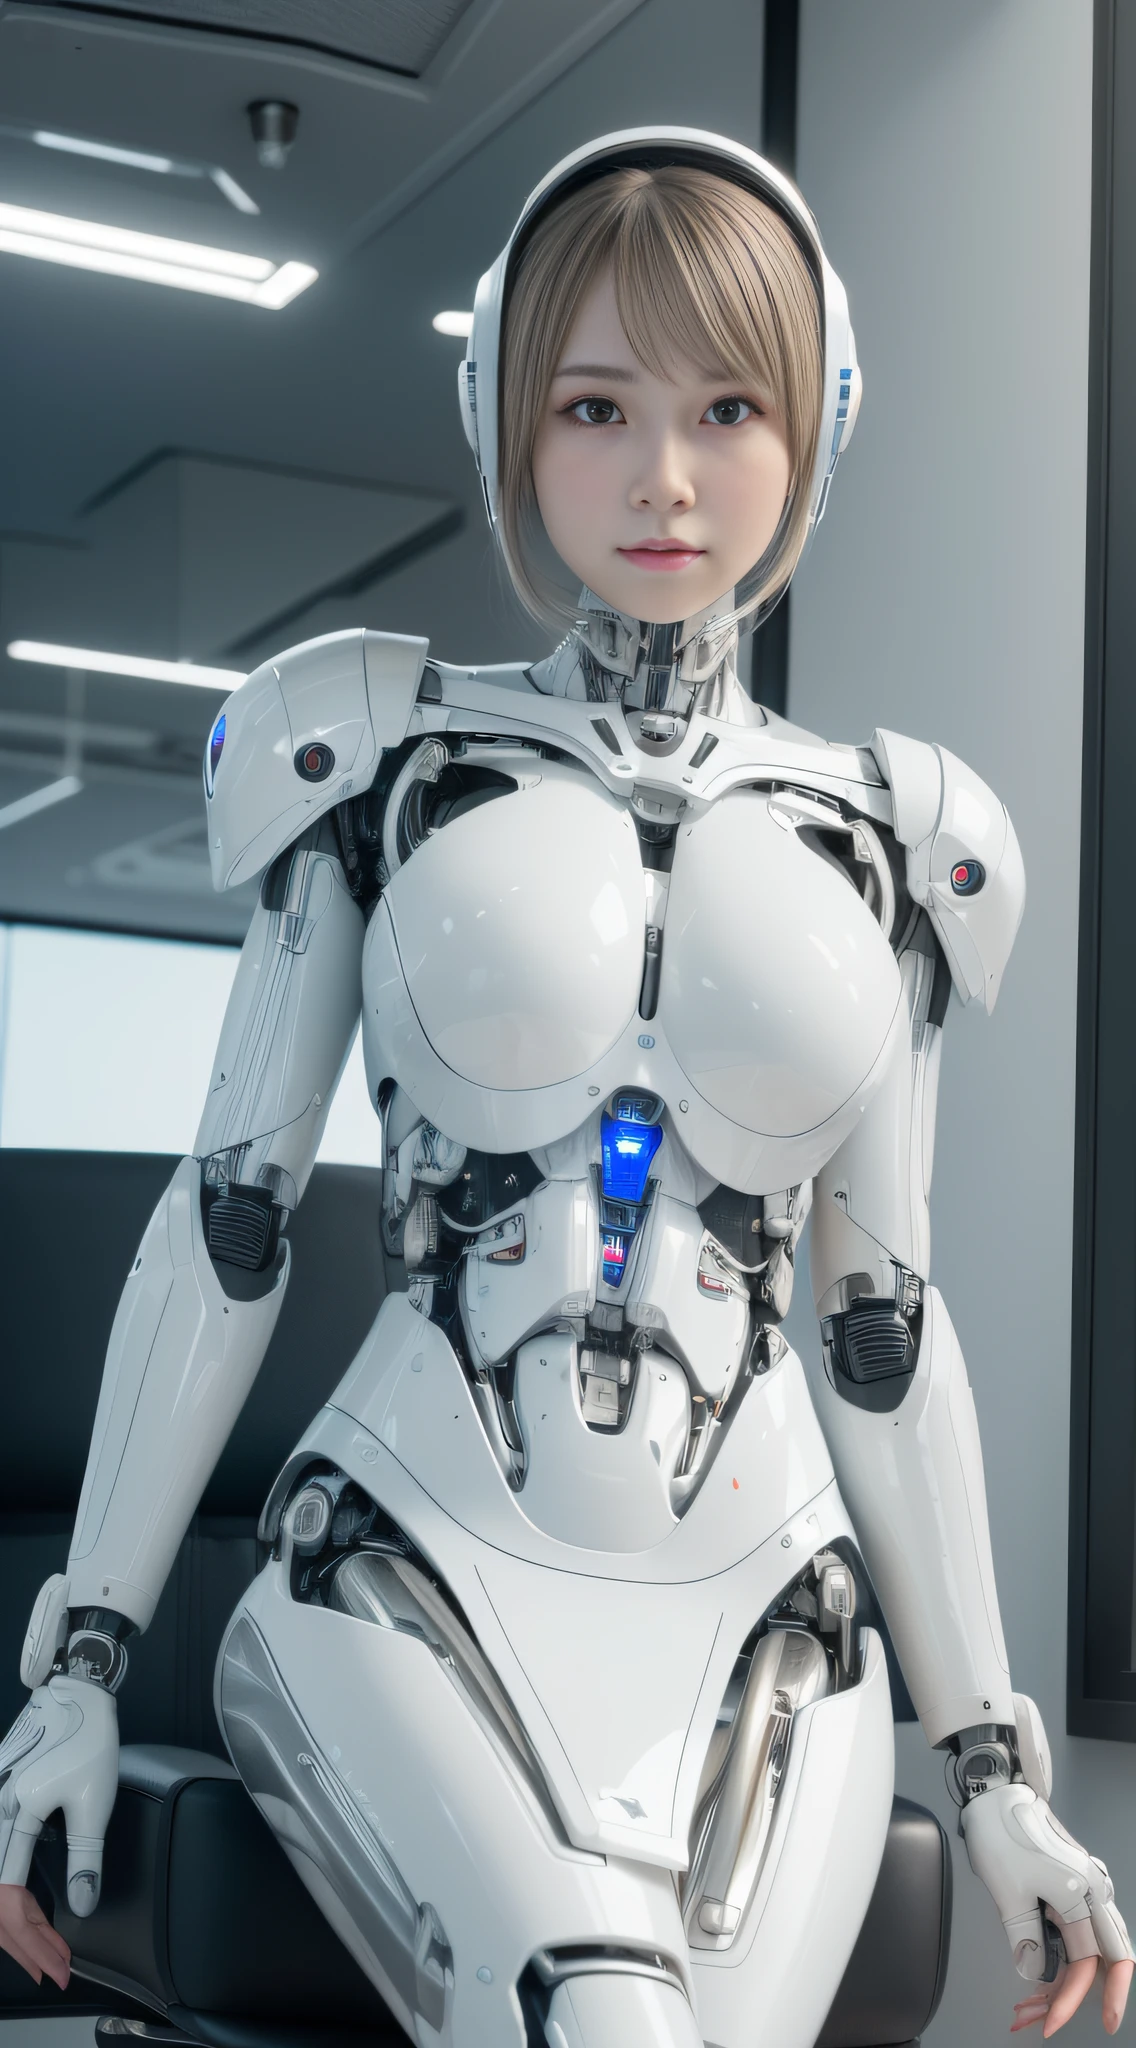 (8千, RAW 照片, 最好的质量, 杰作:1.2), (实际的, photo-实际的:1.37), 极其详细, 墙纸, 1女孩, 可爱的, 看起来像 (渡边麻友), 细致的脸部, (机器人 eye), 短发),(科幻白铁套装的复杂 3D 渲染超详细:1.2), (Android 脸:1), (机器人), (机器人ic parts), (奢华赛博朋克), (hyper实际的), (解剖的), (电缆电线), (微芯片), (机器人), (银珠), (在办公椅上坐直), (全身:1), 详细办公室, 早晨, 专业照明, 电影灯光, 光子映射, 辐射度, 基于物理的渲染,